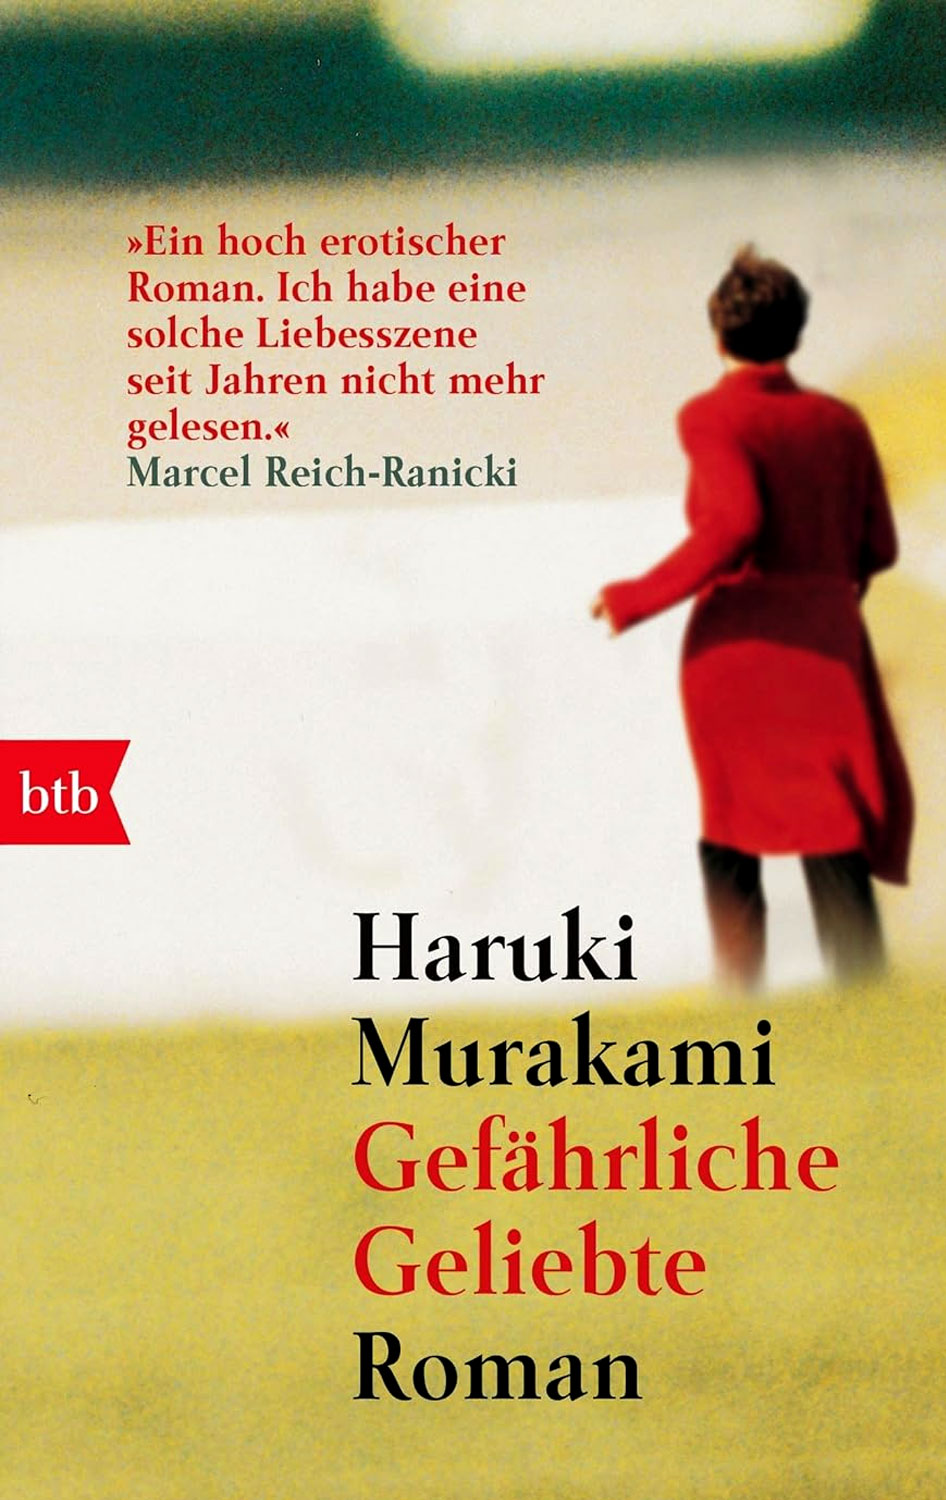 Haruki-Murakami-Gefährliche-Geliebte